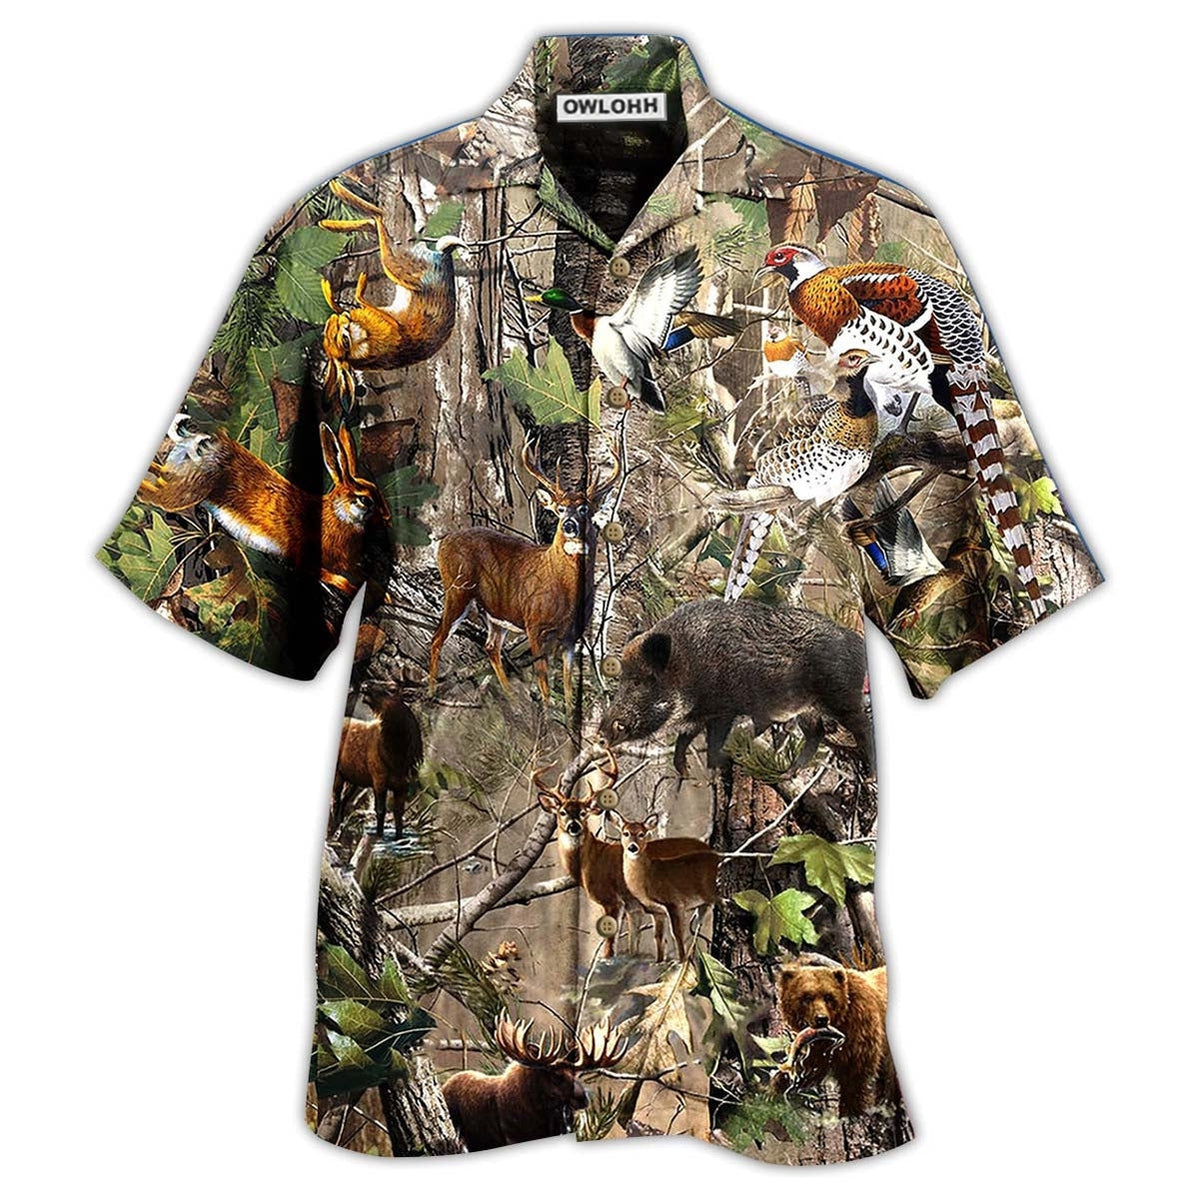 Hawaiian Shirt / Adults / S Hunting Lover Animals Cool - Hawaiian Shirt - Owls Matrix LTD